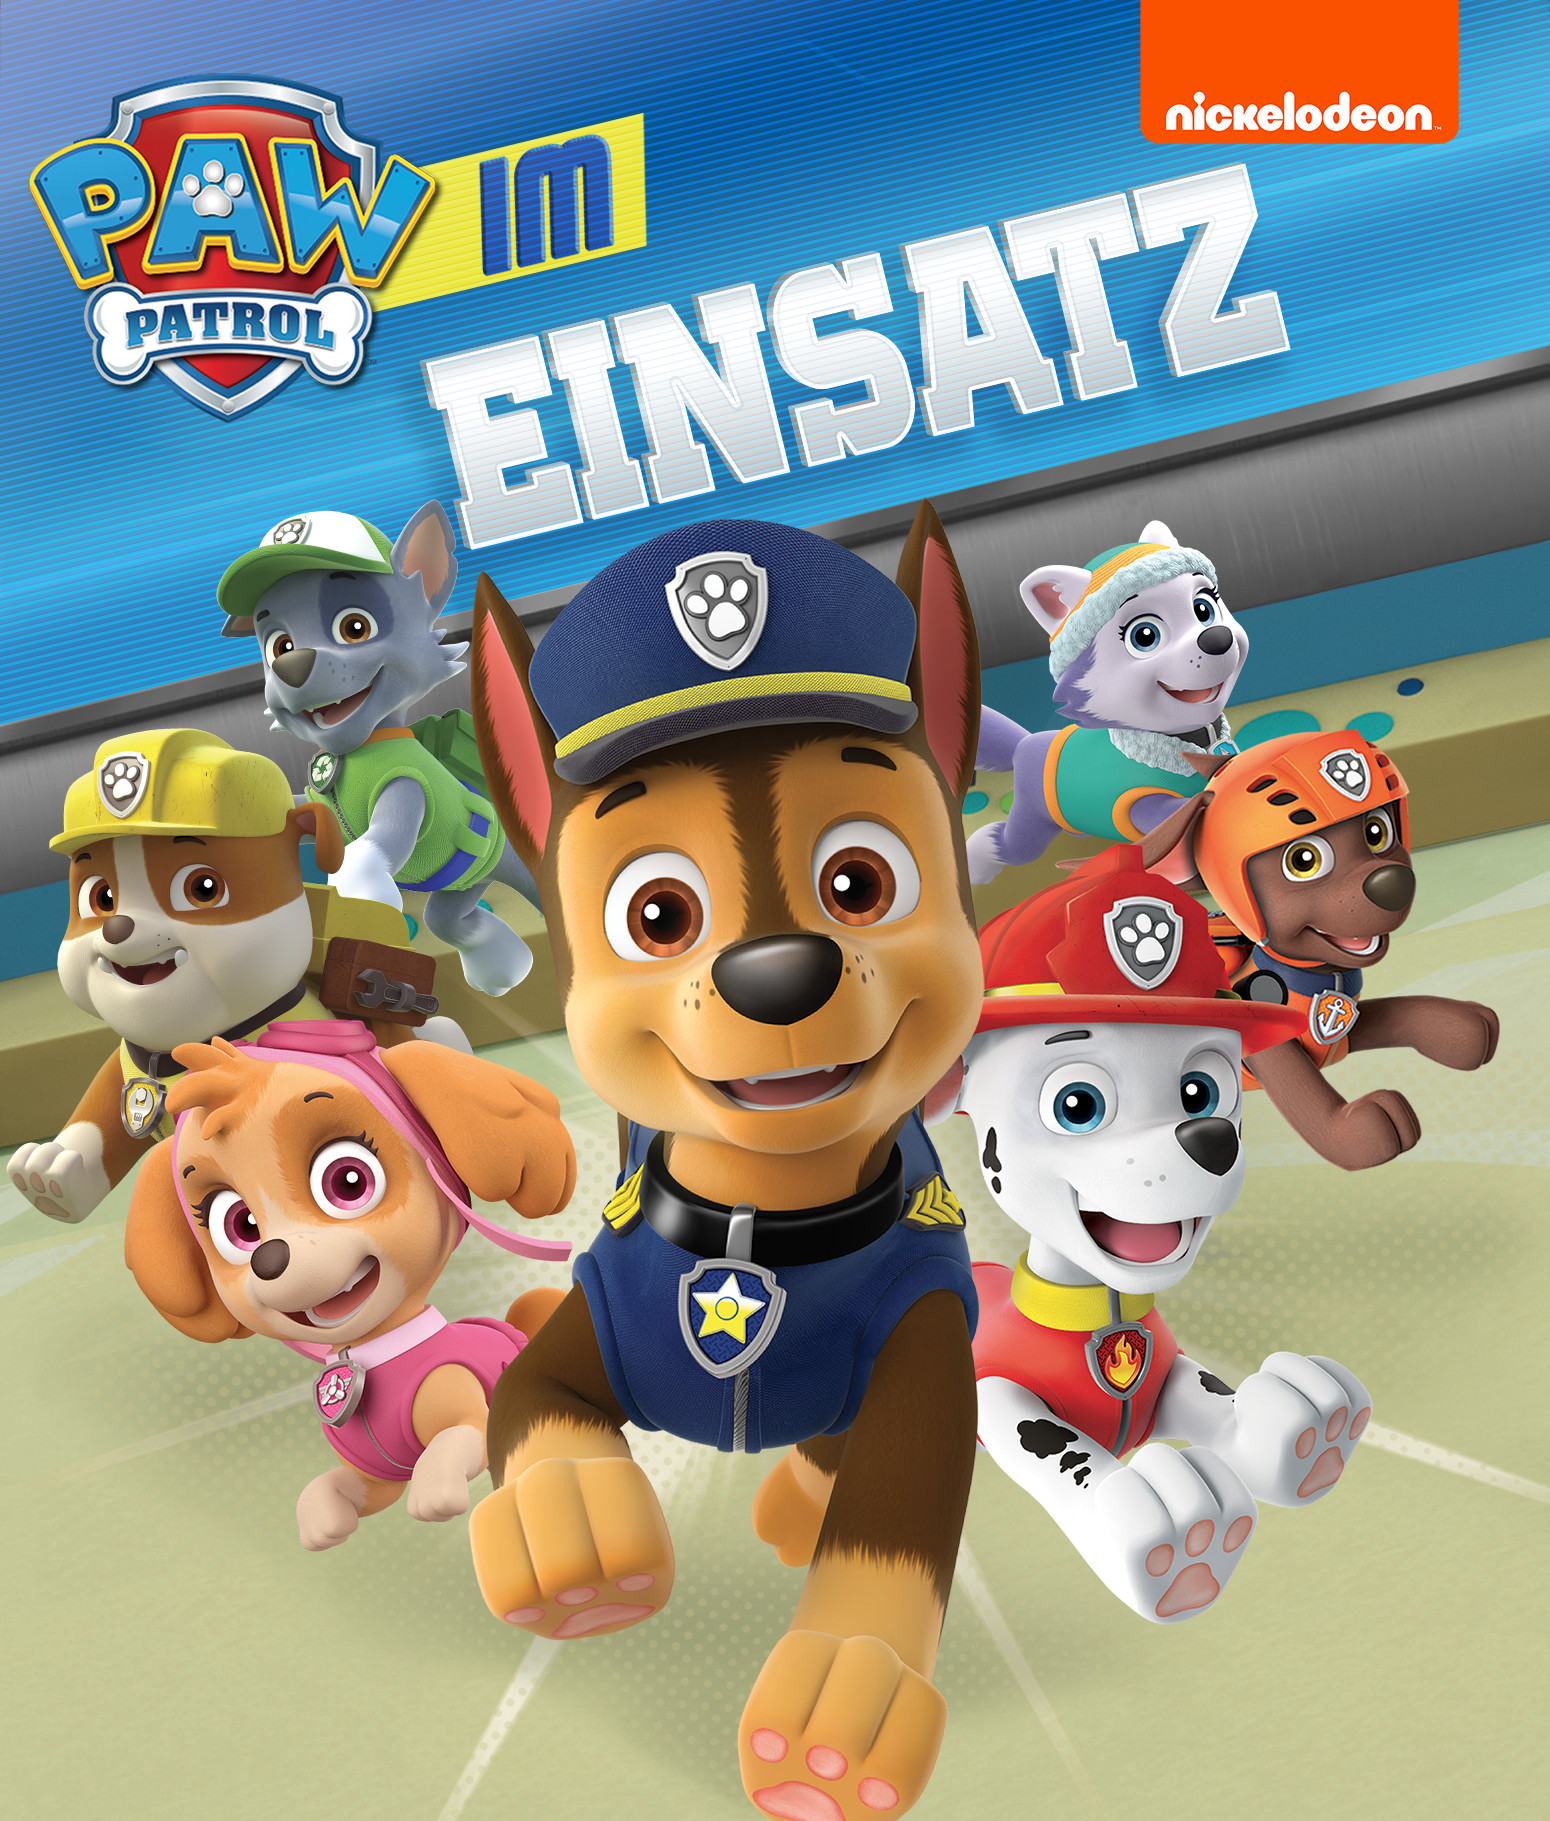 Cover des Spiels: Hunde mit verschiedenen Kostümen, verkleidet als Polizisten, Feuerwehr etc. 